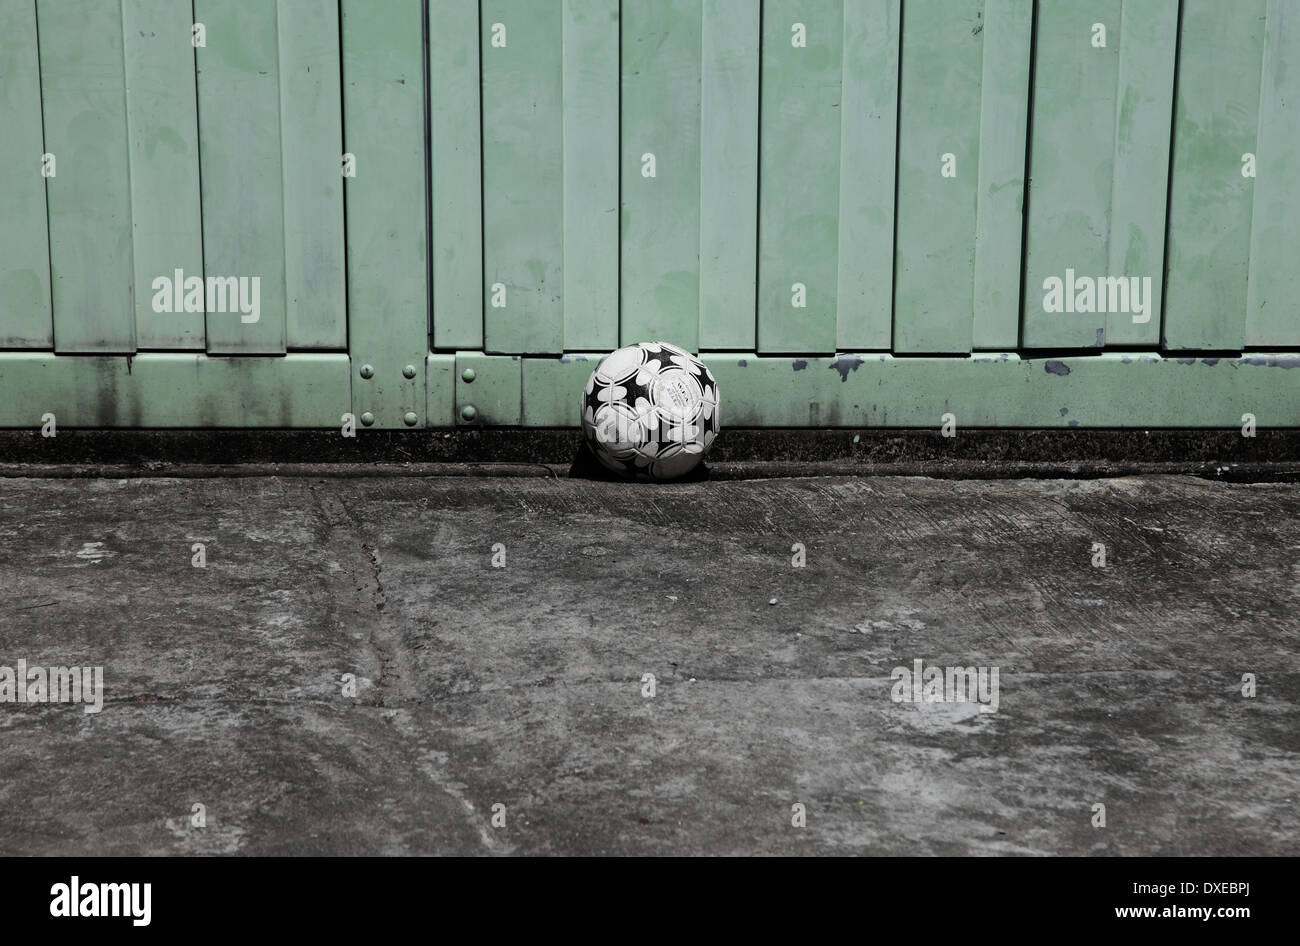 Es ist ein Foto von einem Basketball Ball auf einem rauhen Betonboden. Es ist ein Kind-Ball für Spiel und Spiele Stockfoto